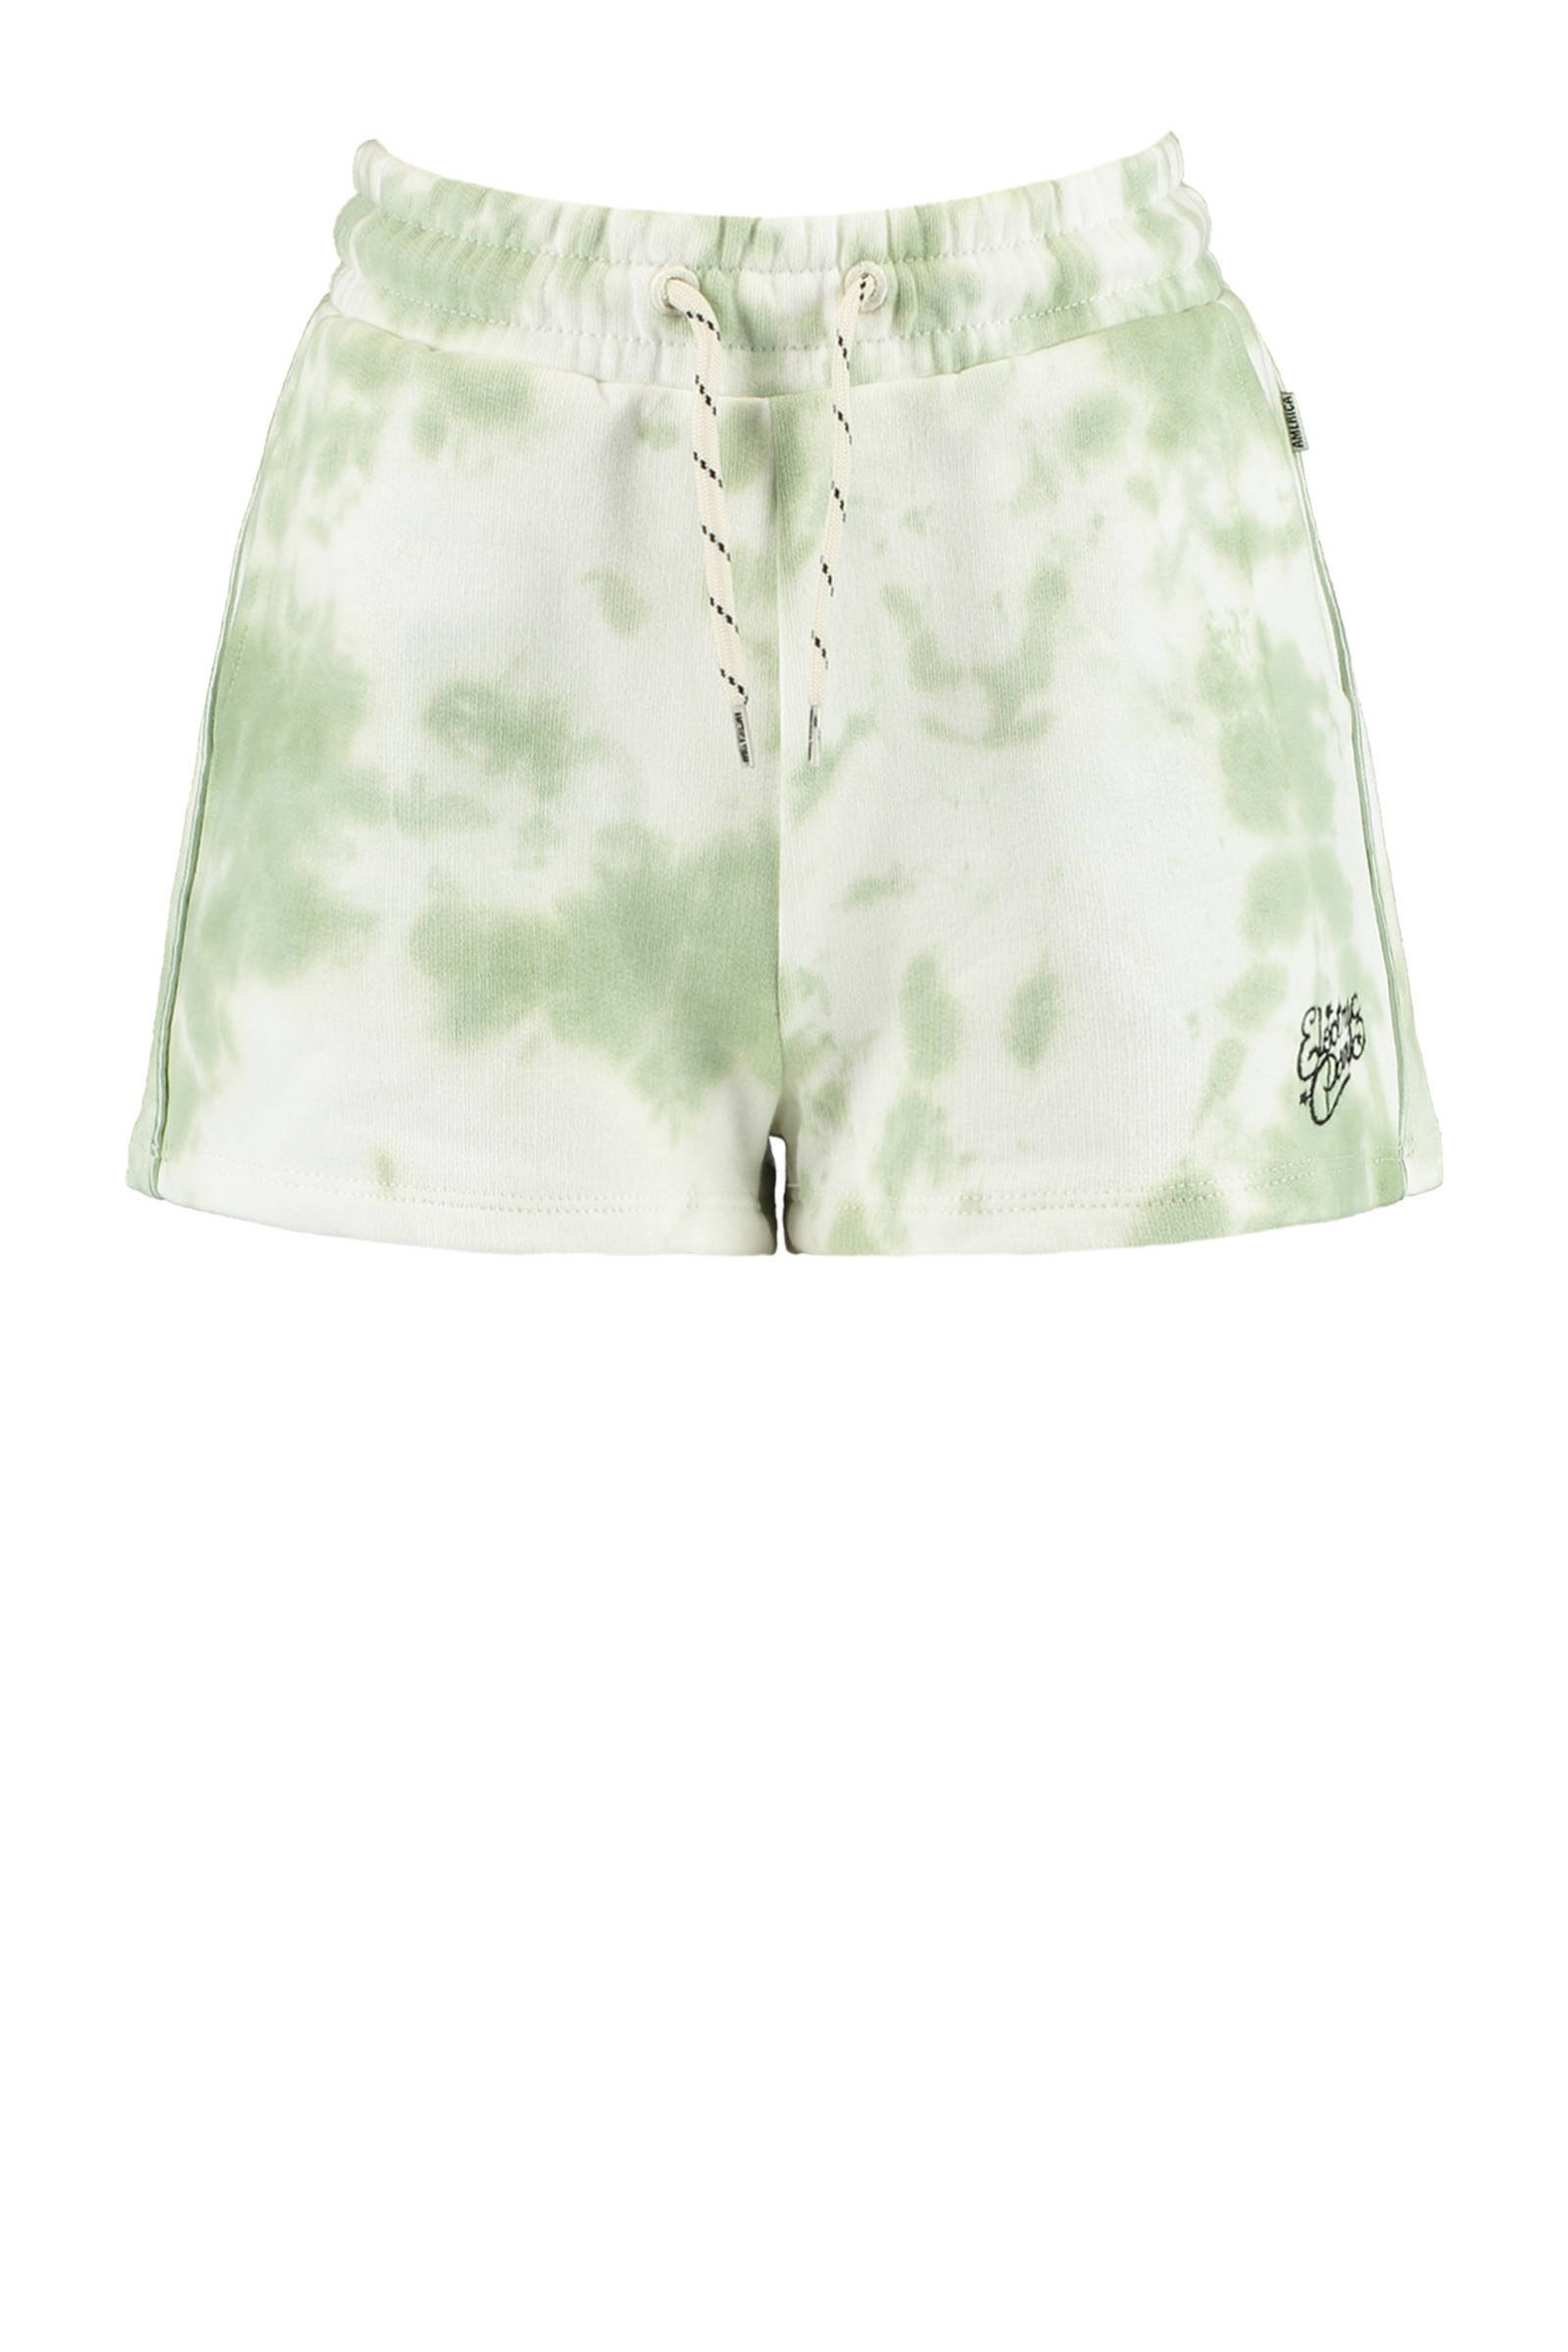 America Today Junior tie-dye slim fit korte broek Nea groen/wit online kopen